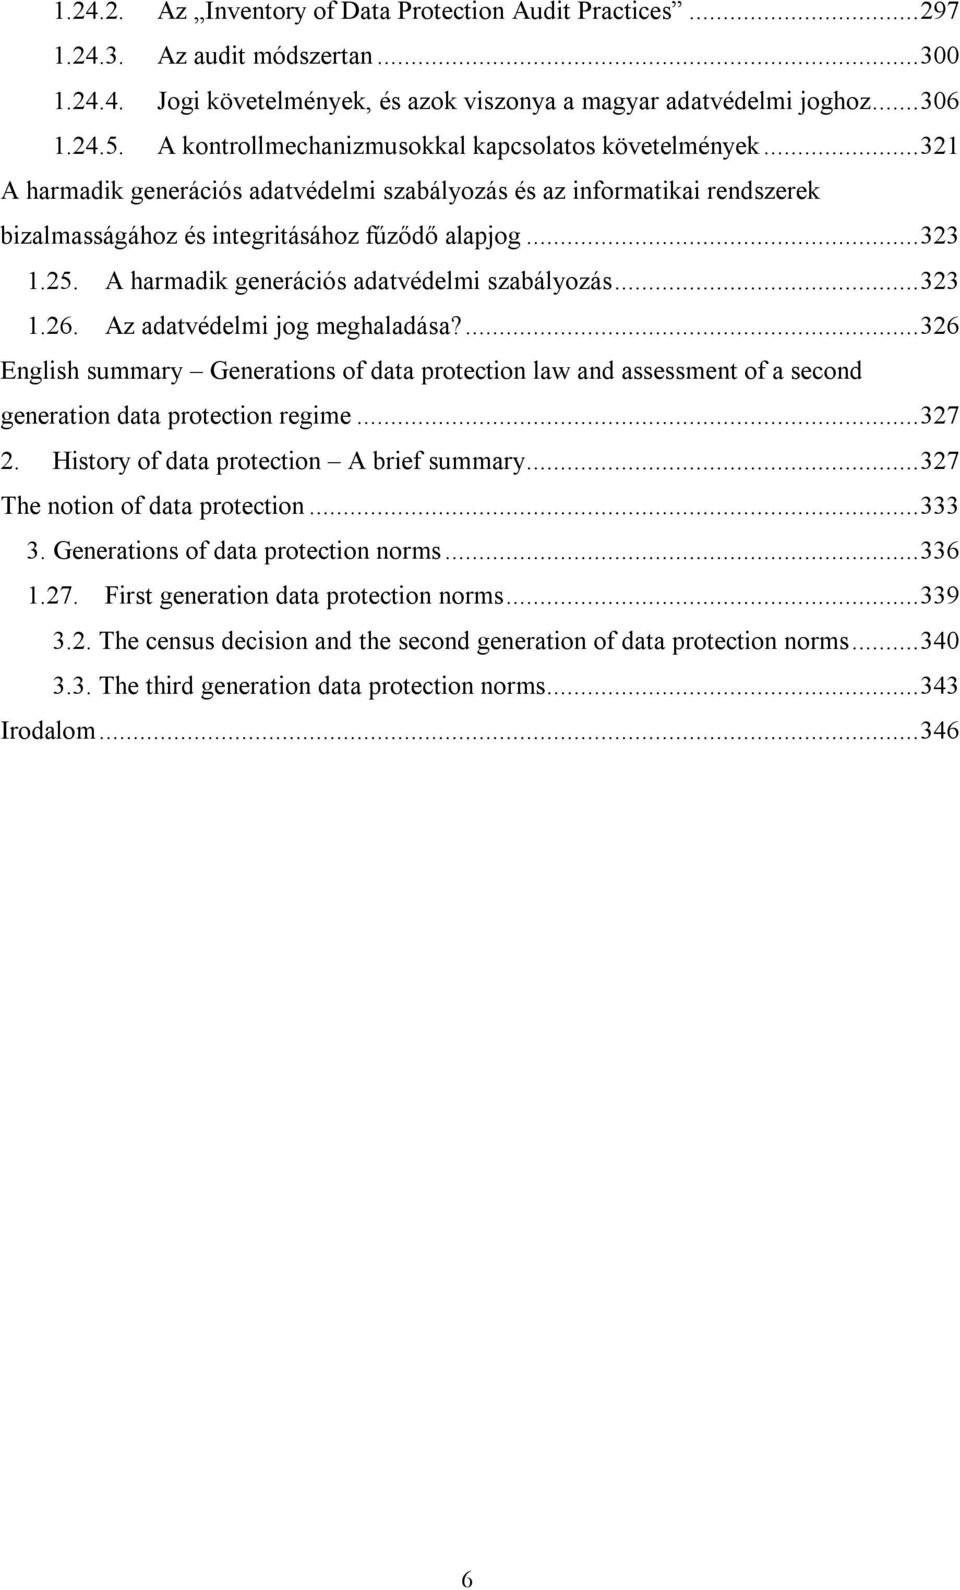 A harmadik generációs adatvédelmi szabályozás...323 1.26. Az adatvédelmi jog meghaladása?